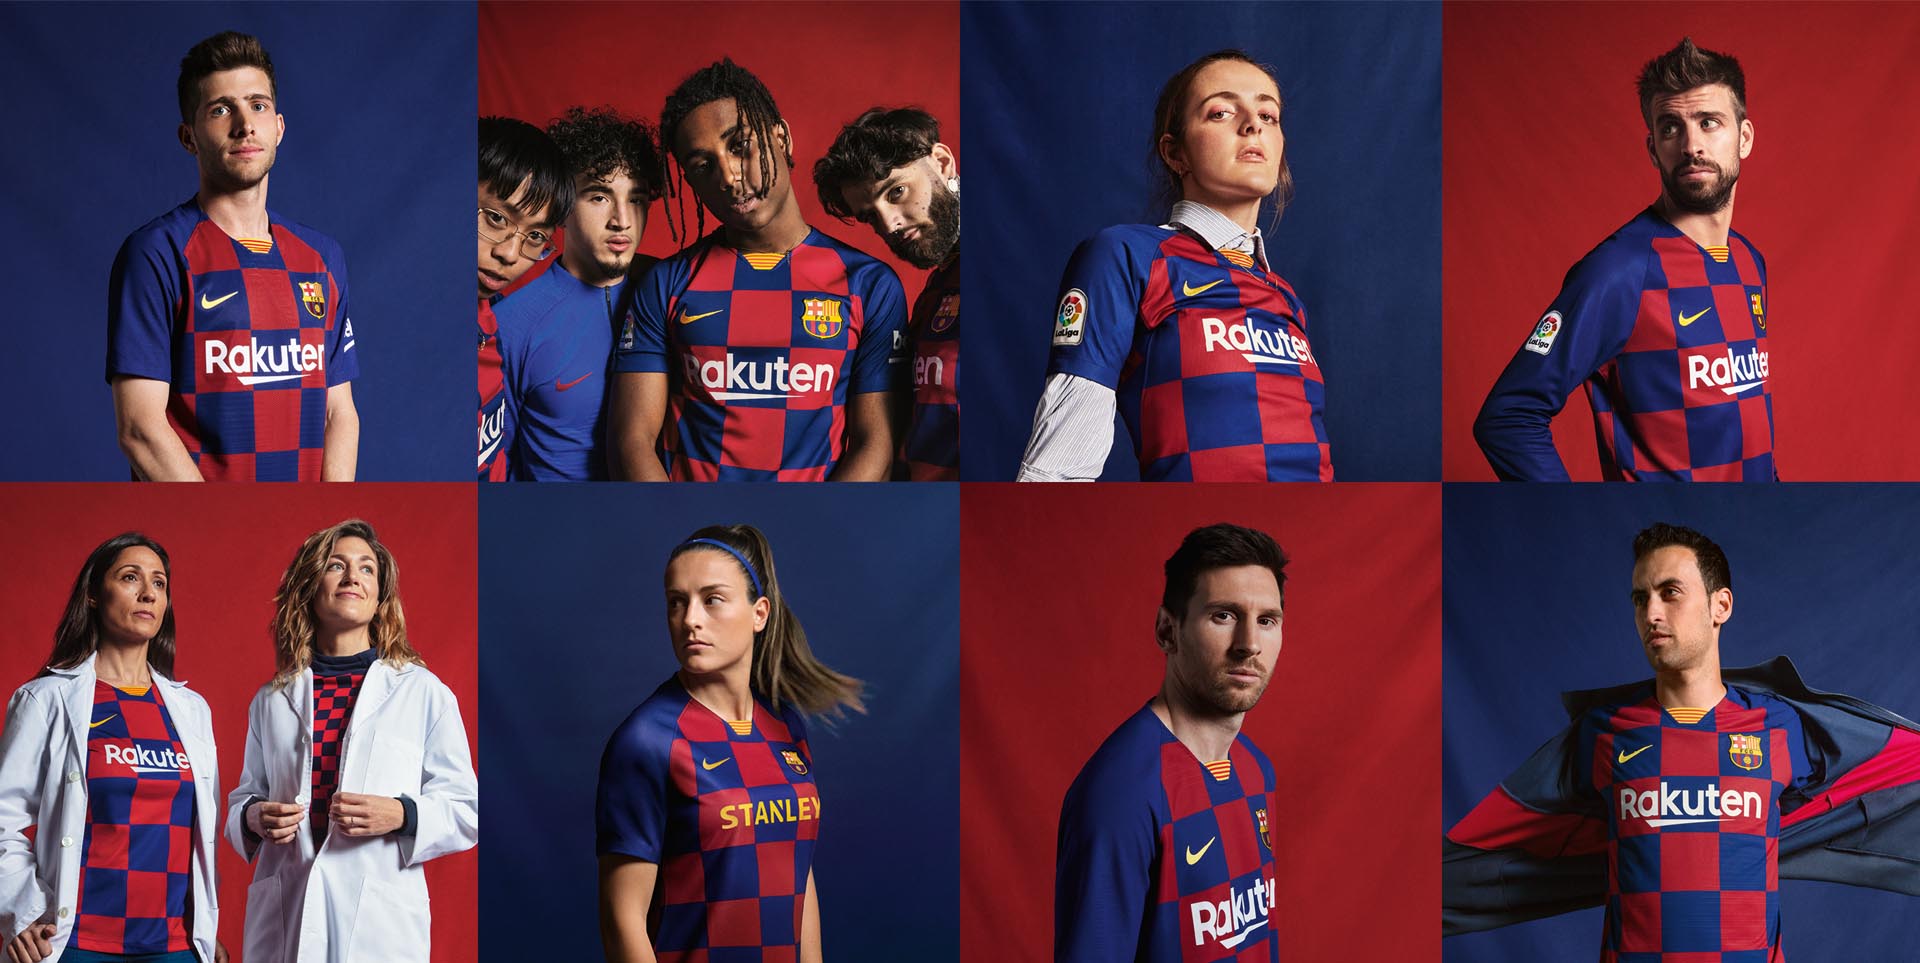 resultaat Afzonderlijk Droogte Barcelona thuisshirt 2019-2020 - Voetbalshirts.com